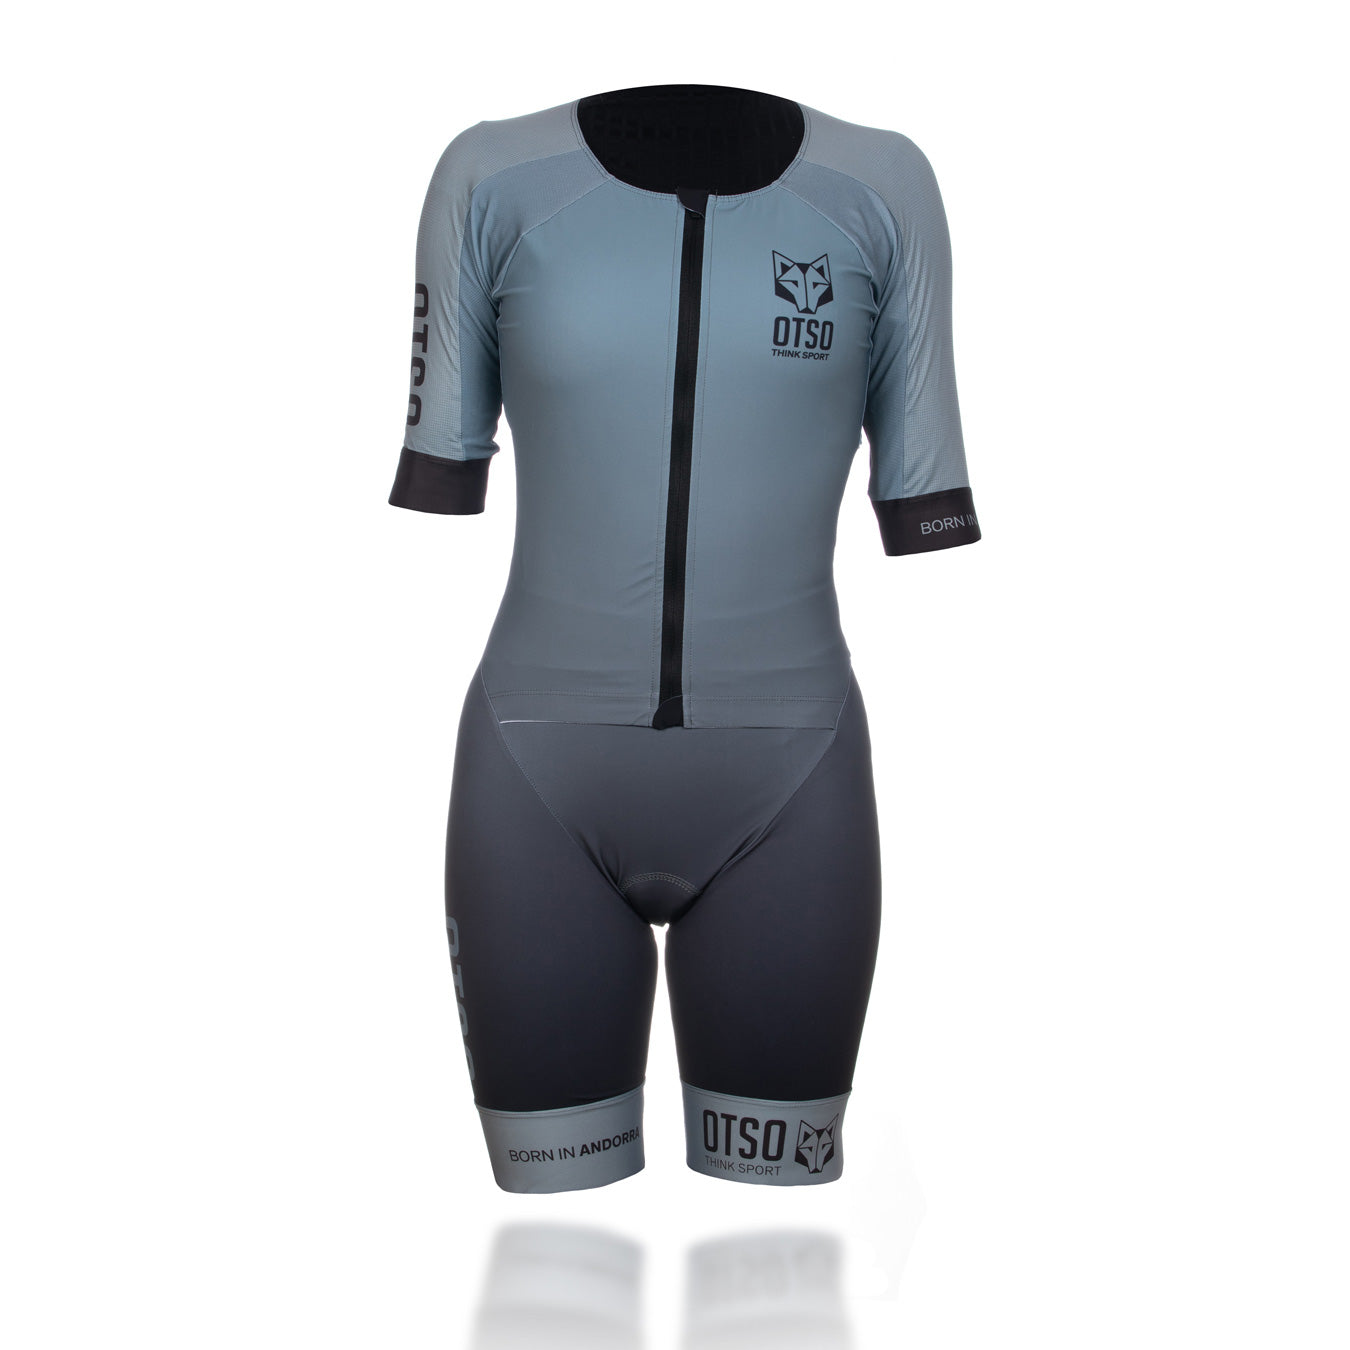 Women's triathlon suit - Silver Gray & Black (Outlet)